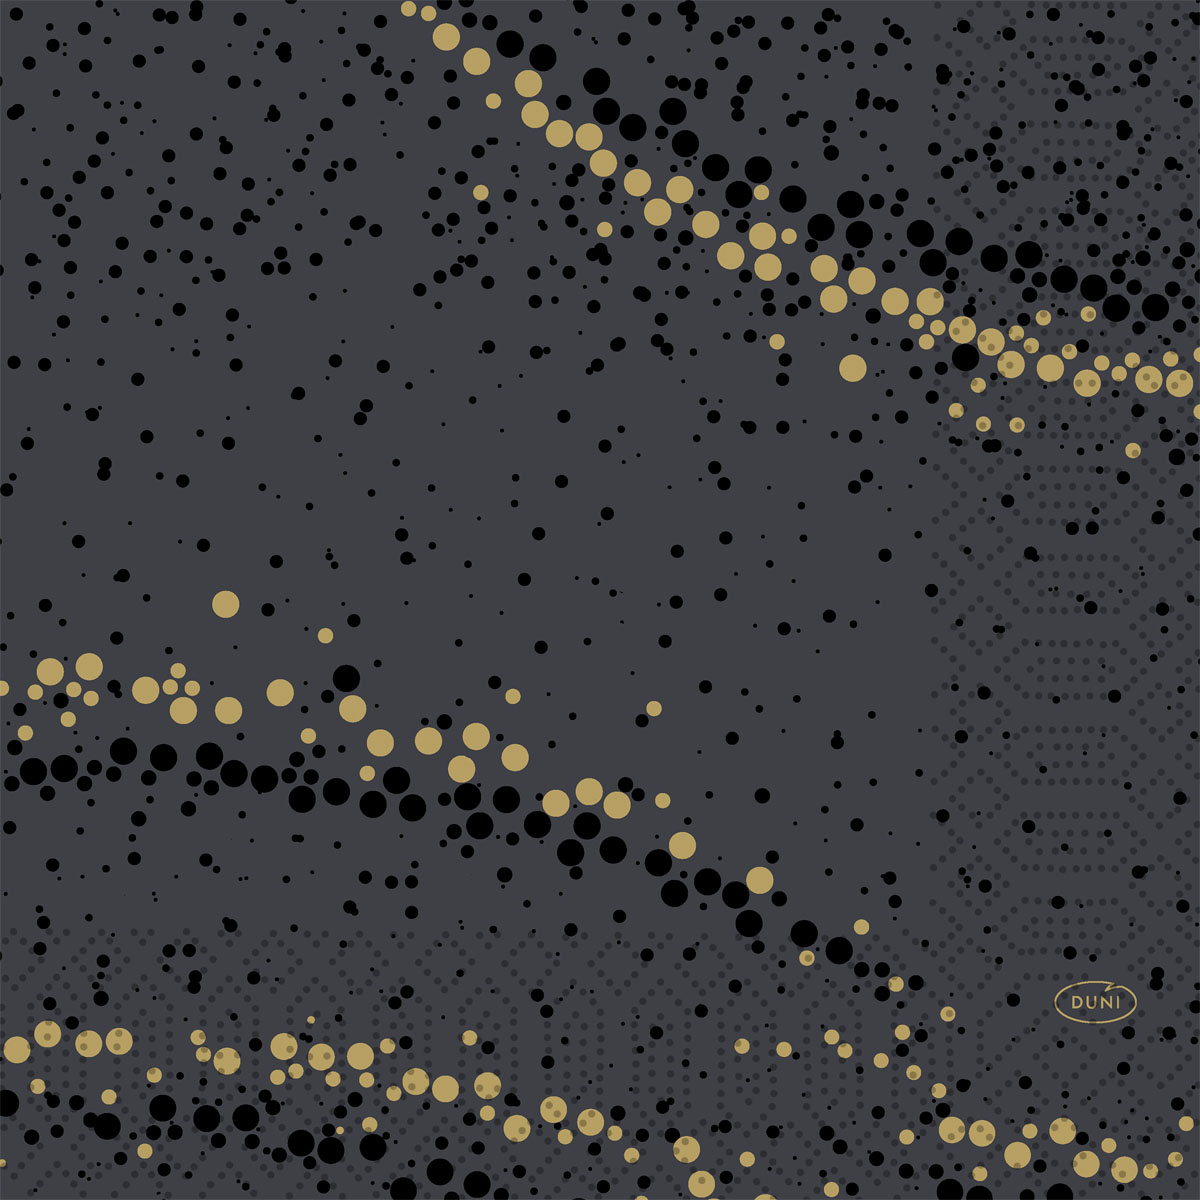 Duni Zelltuchservietten 33 x 33 cm 3-lagig 1/4 Falz Golden Stardust black       